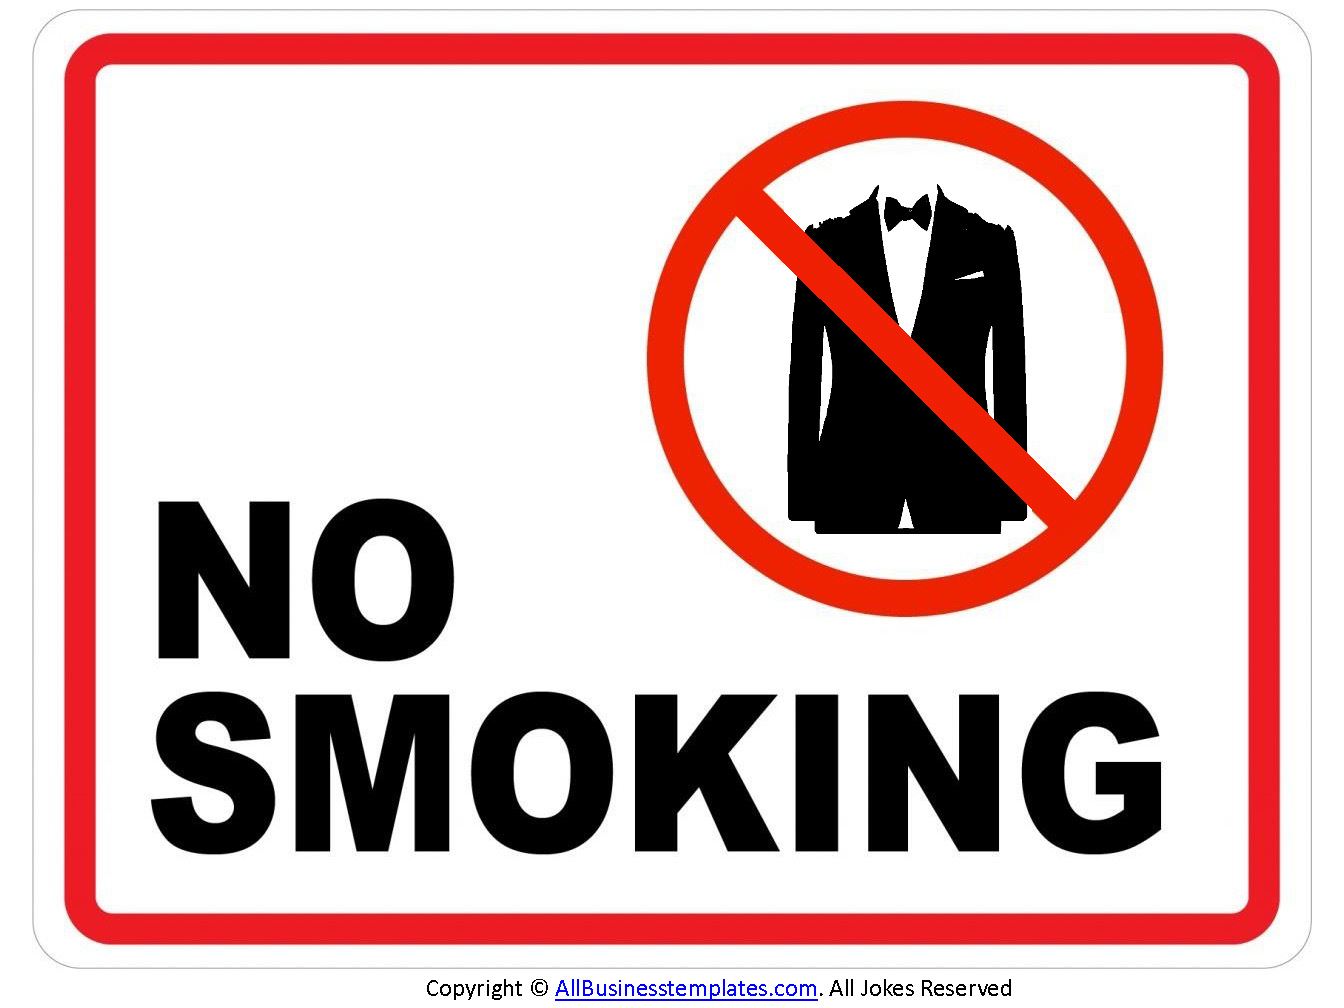 No Smoking Bordje main image